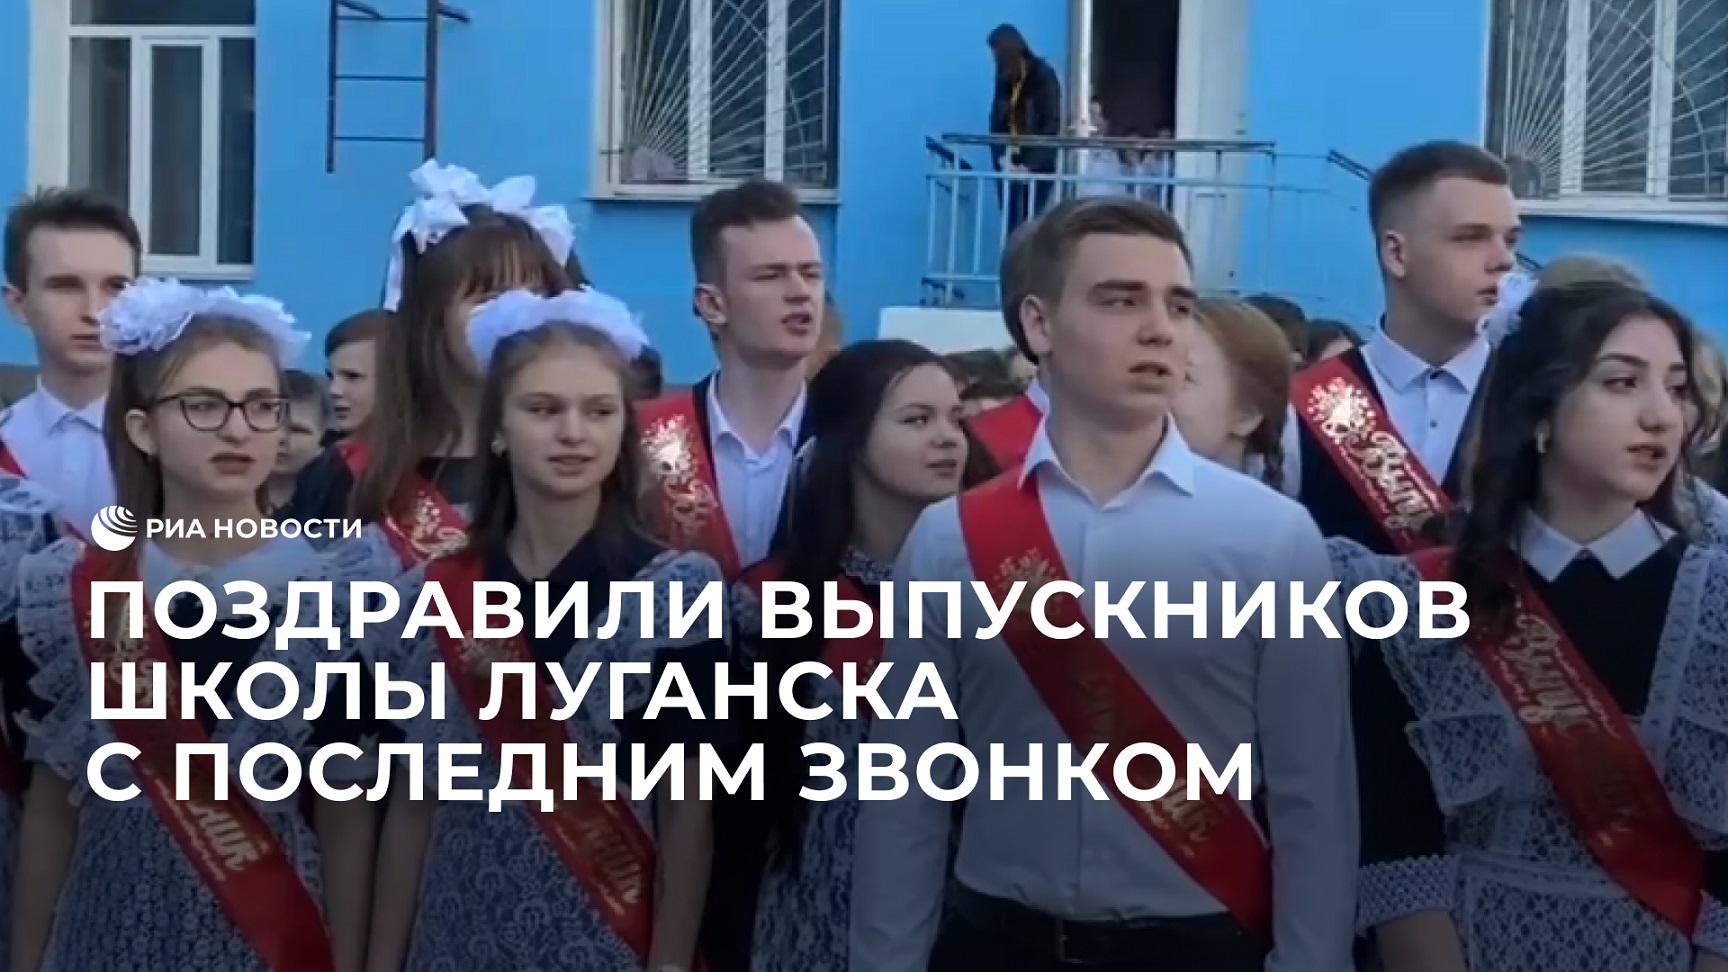 Следователи СК России поздравили выпускников школы Луганска с последним звонком